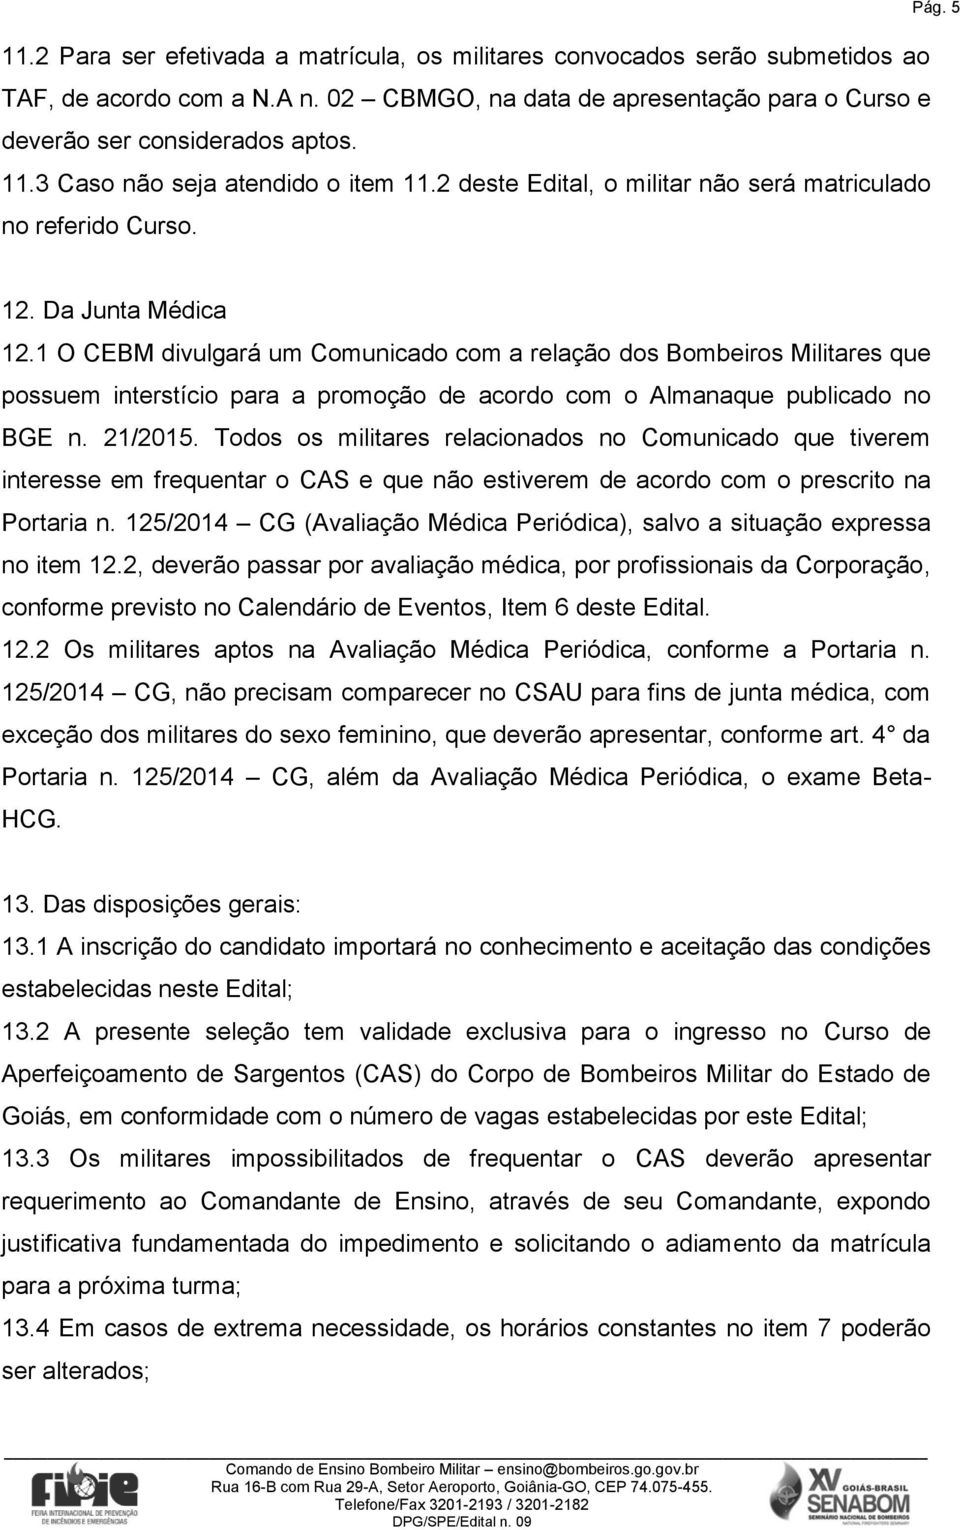 1 O CEBM divulgará um Comunicado com a relação dos Bombeiros Militares que possuem interstício para a promoção de acordo com o Almanaque publicado no BGE n. 21/2015.